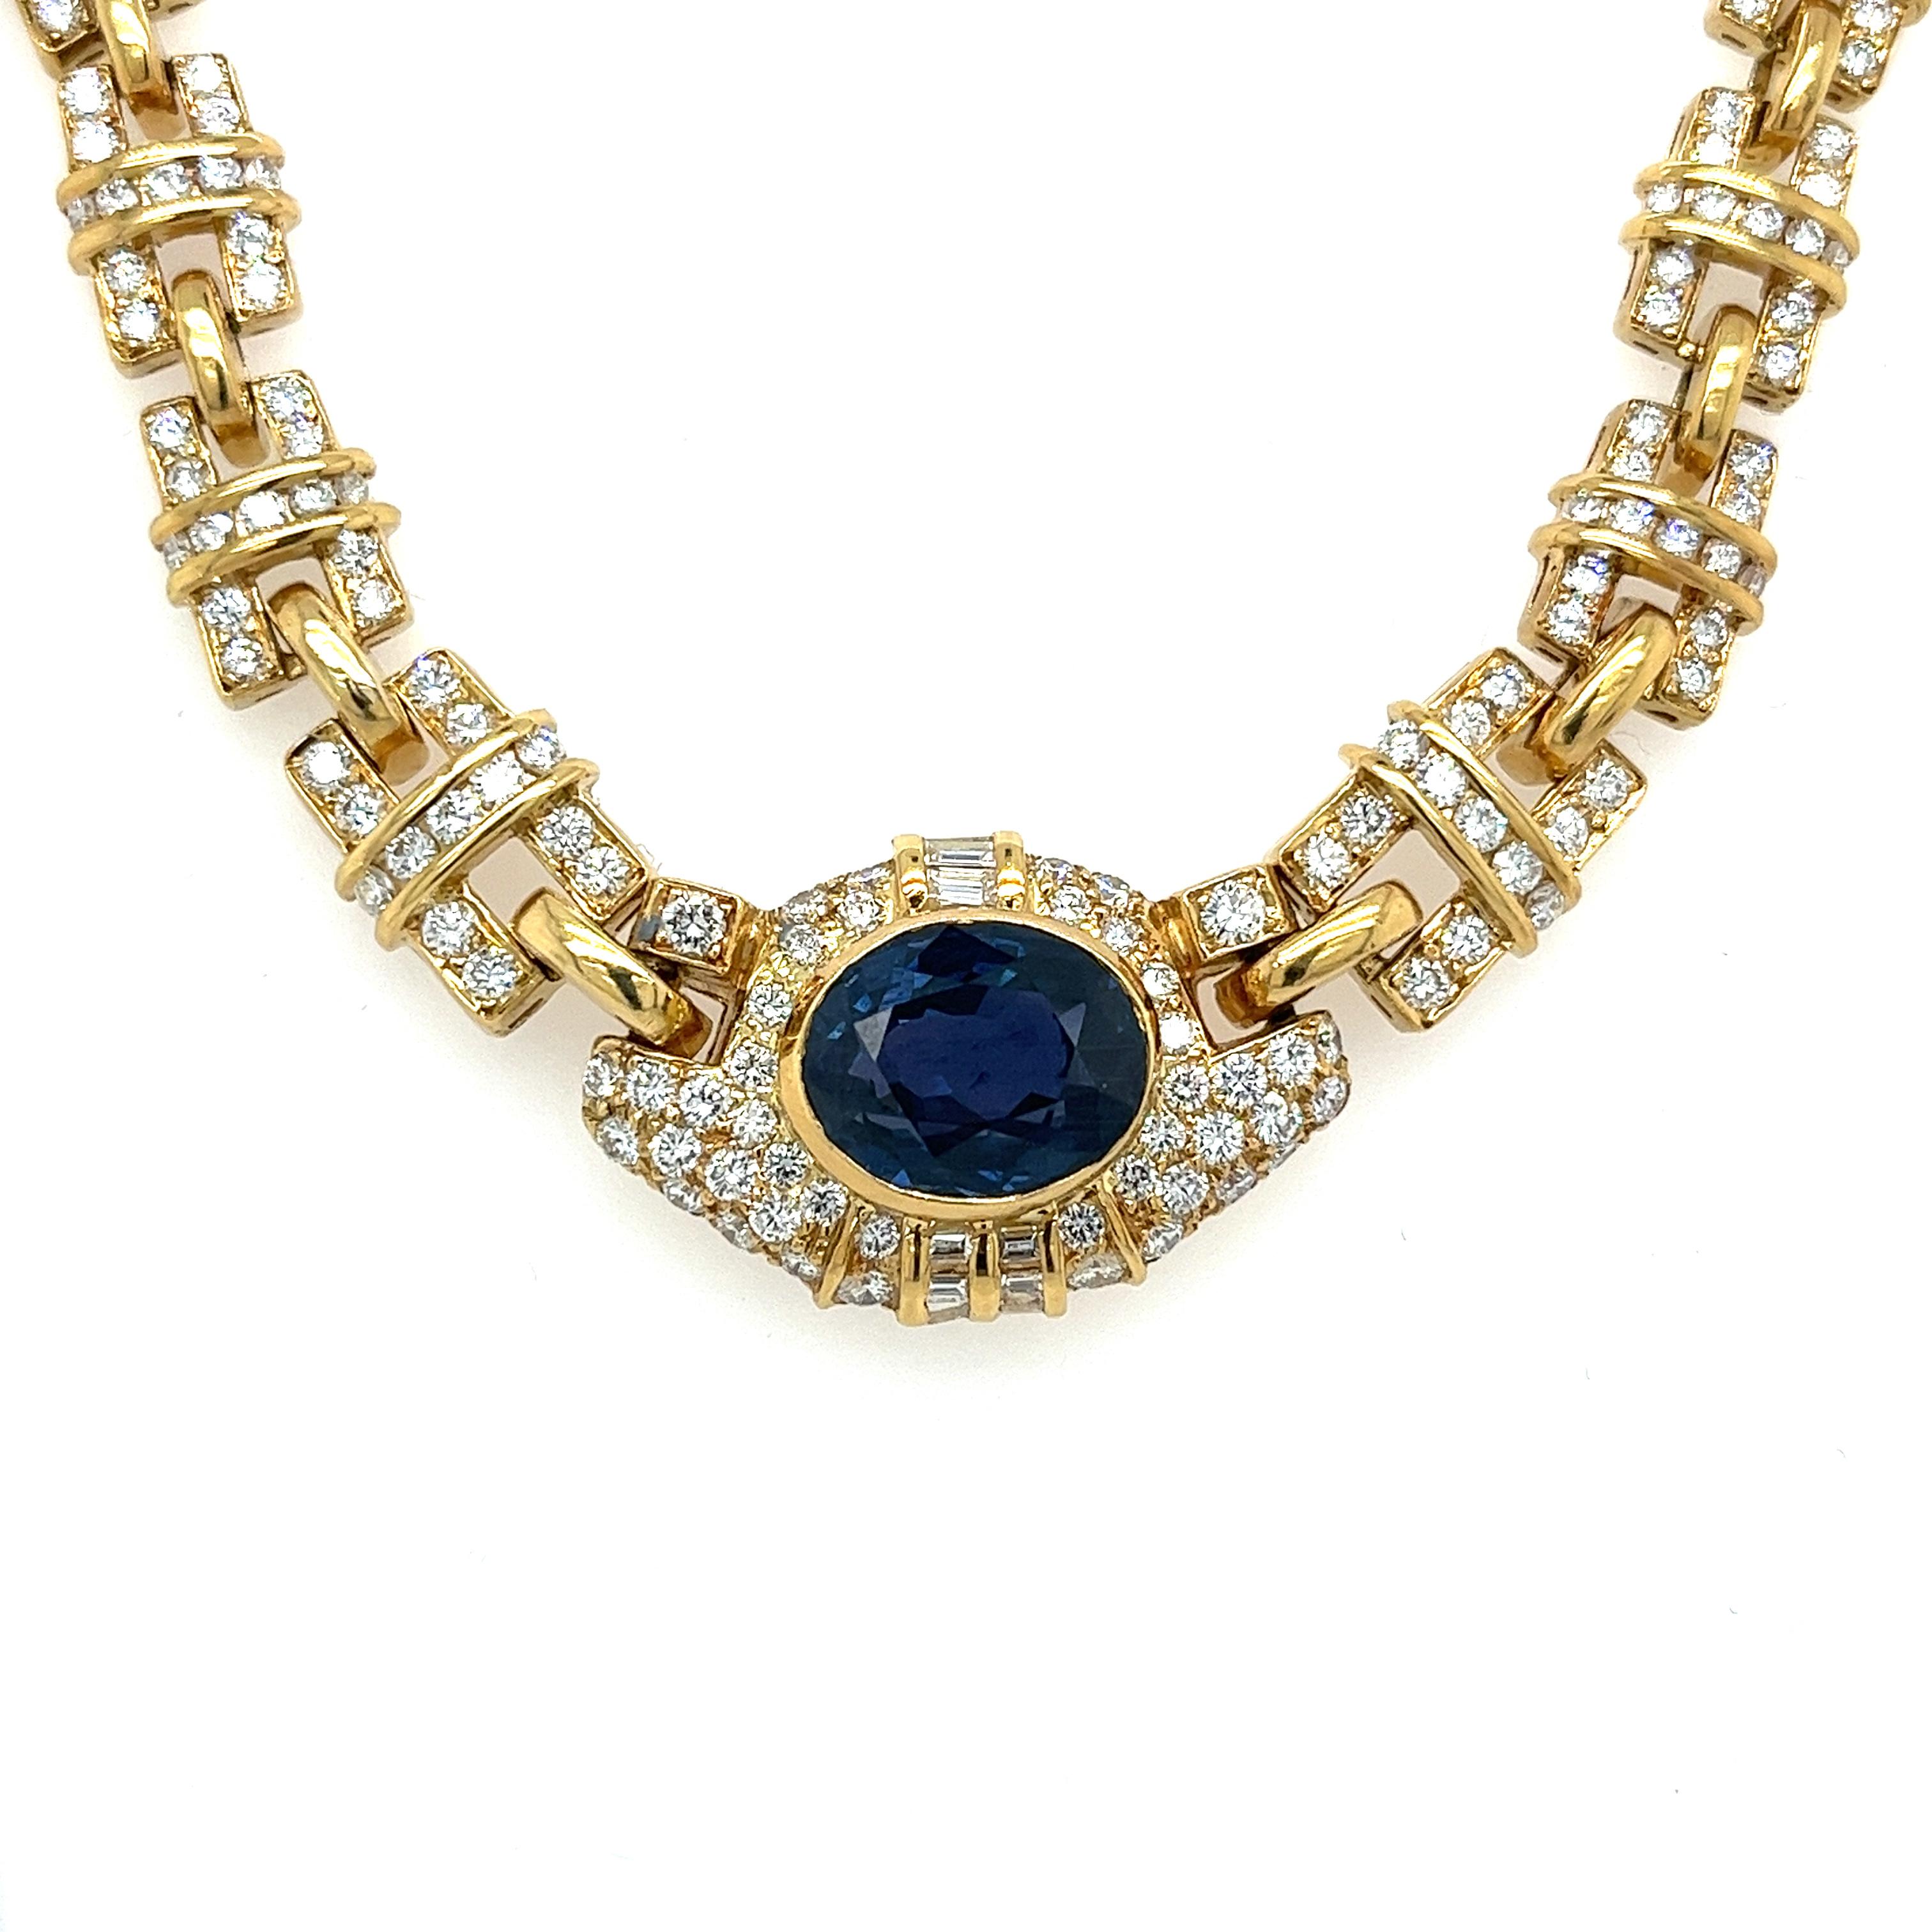 GIA-zertifizierter, unbehandelter, blauer Saphir in einer 18-karätigen Goldkette mit Lünette. Die Halskette besteht aus 158 natürlichen Diamanten mit nahezu lupenreiner Reinheit und faszinierender Brillanz. Das kunstvolle Herzstück aus poliertem